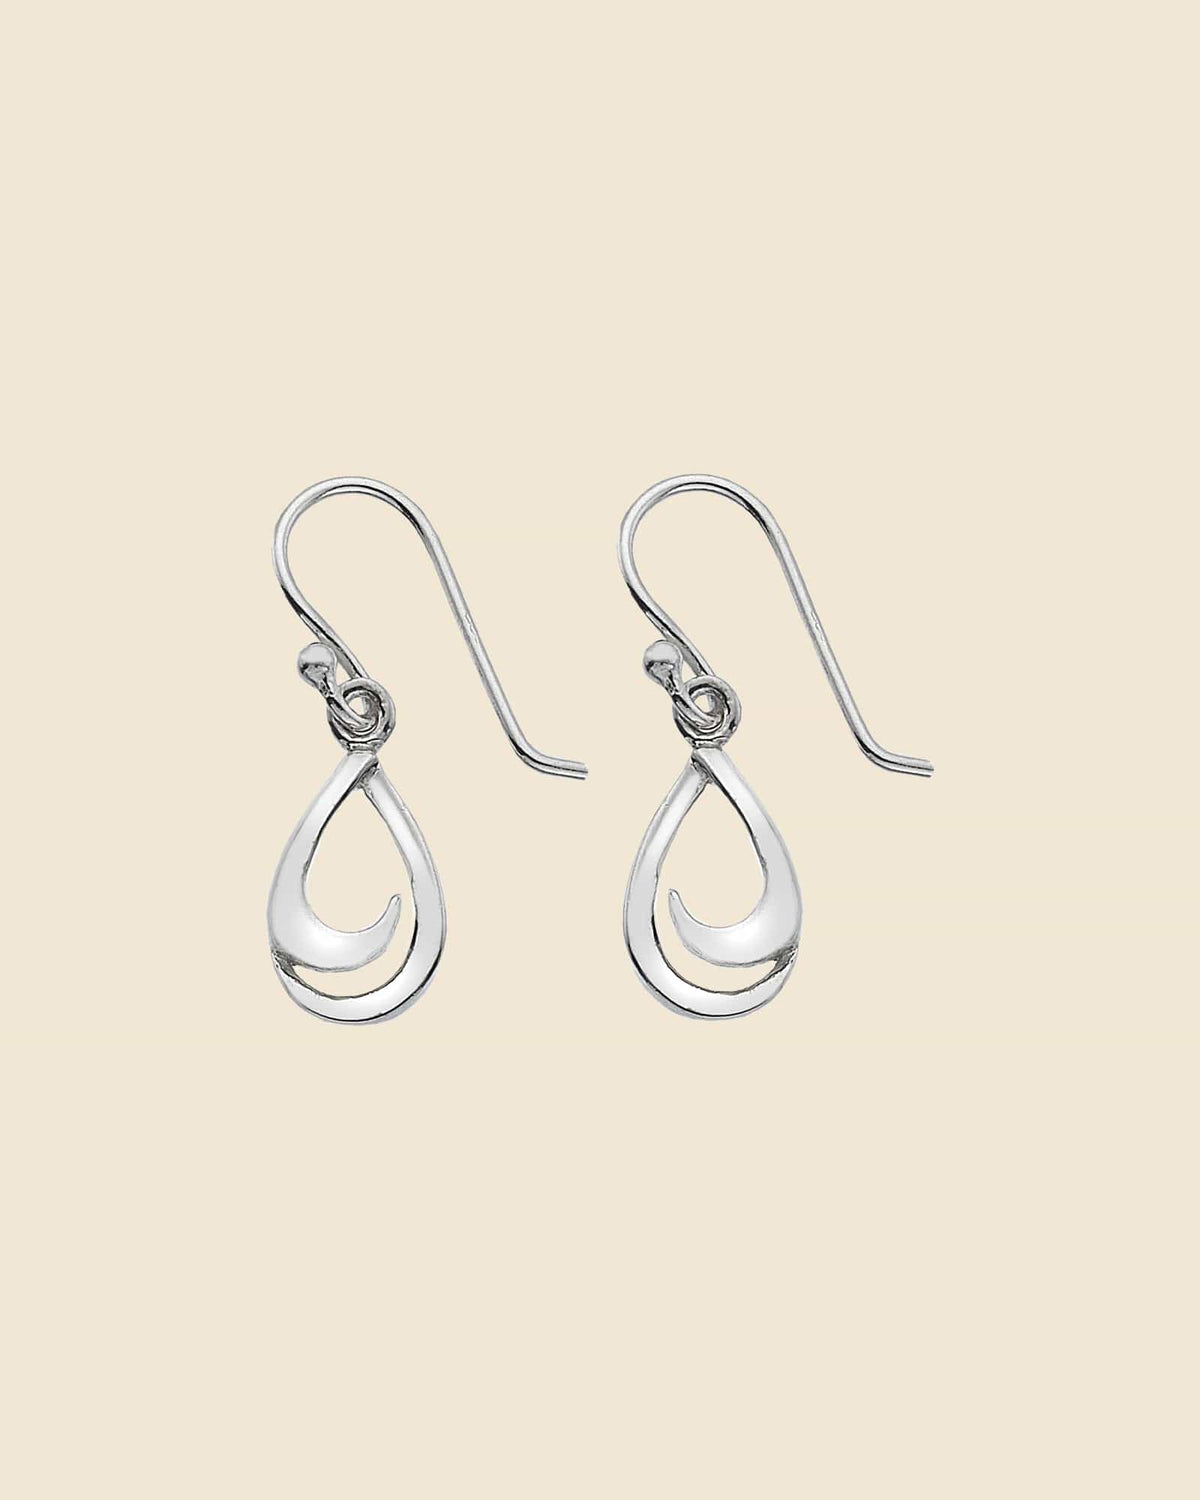 Dangle Earrings Drop Hook Earrings S Shaped Earrings Silver Spiral